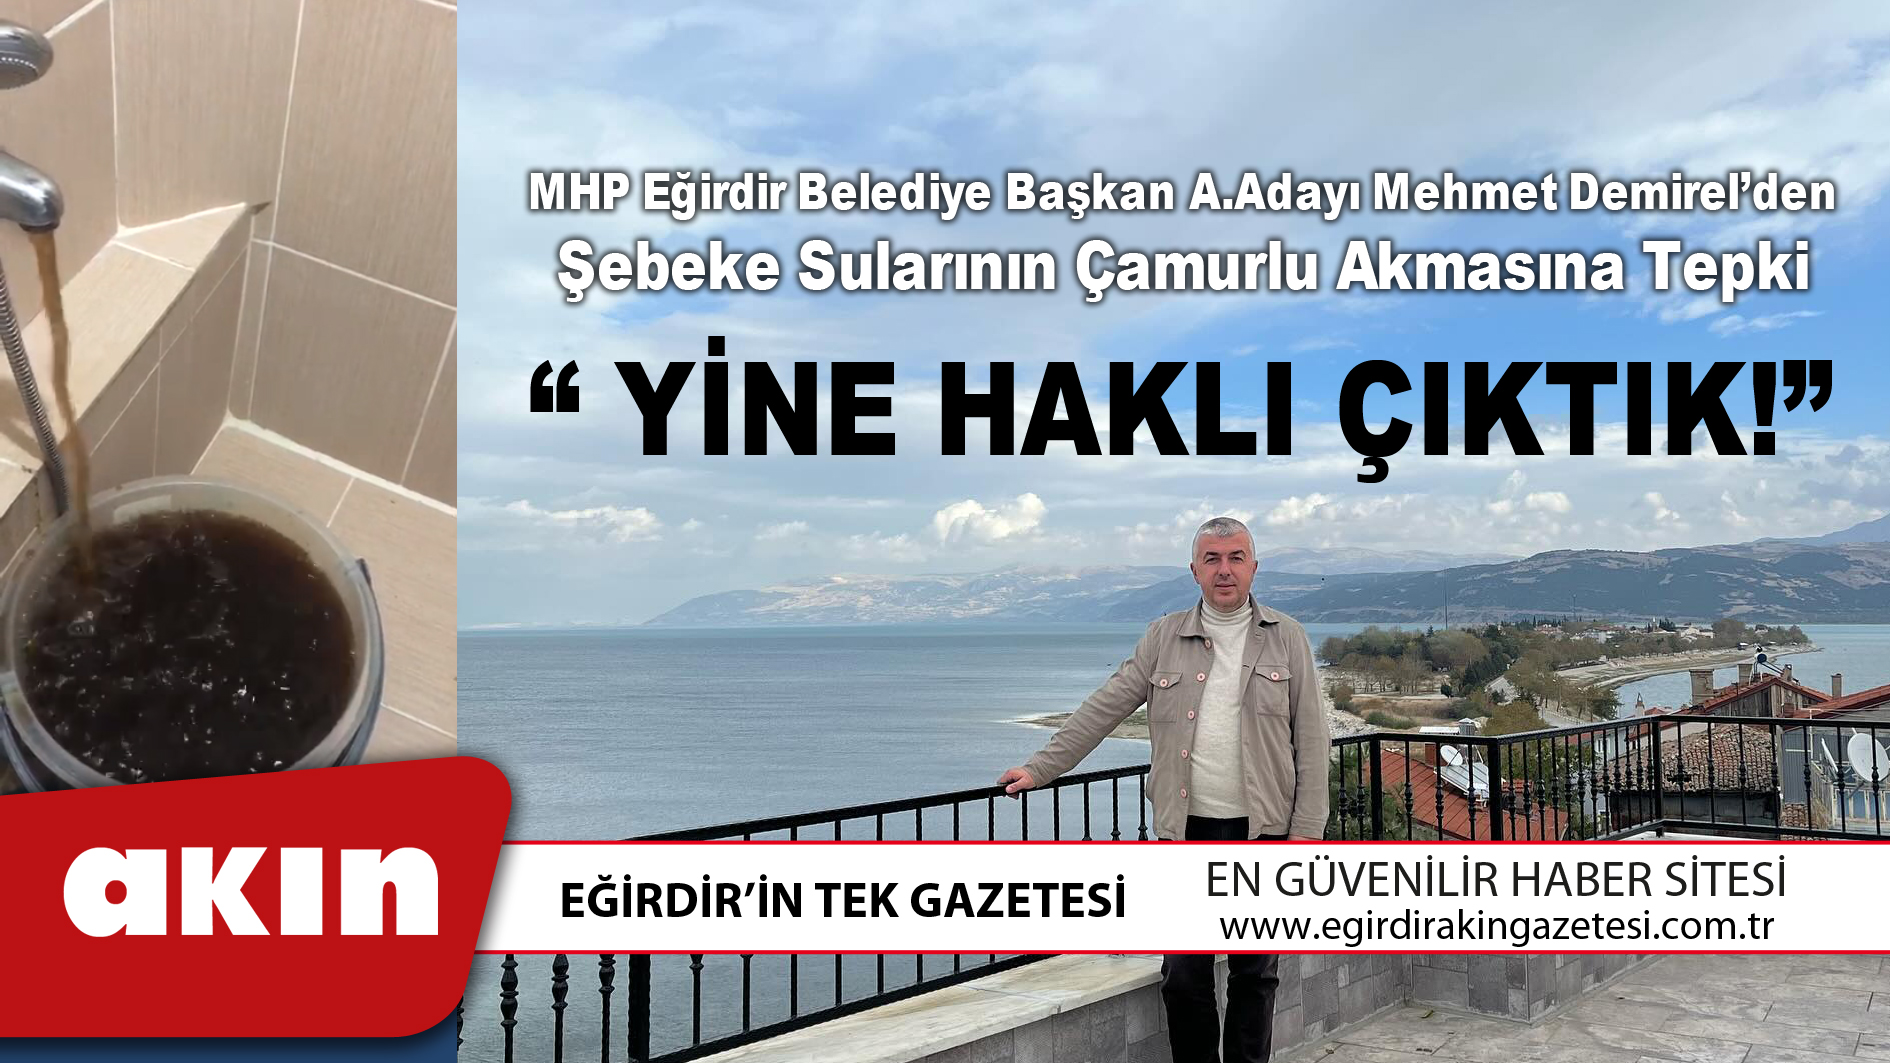 MHP Eğirdir Belediye Başkan A.Adayı Mehmet Demirel’den Şebeke Sularının Çamurlu Akmasına Tepki